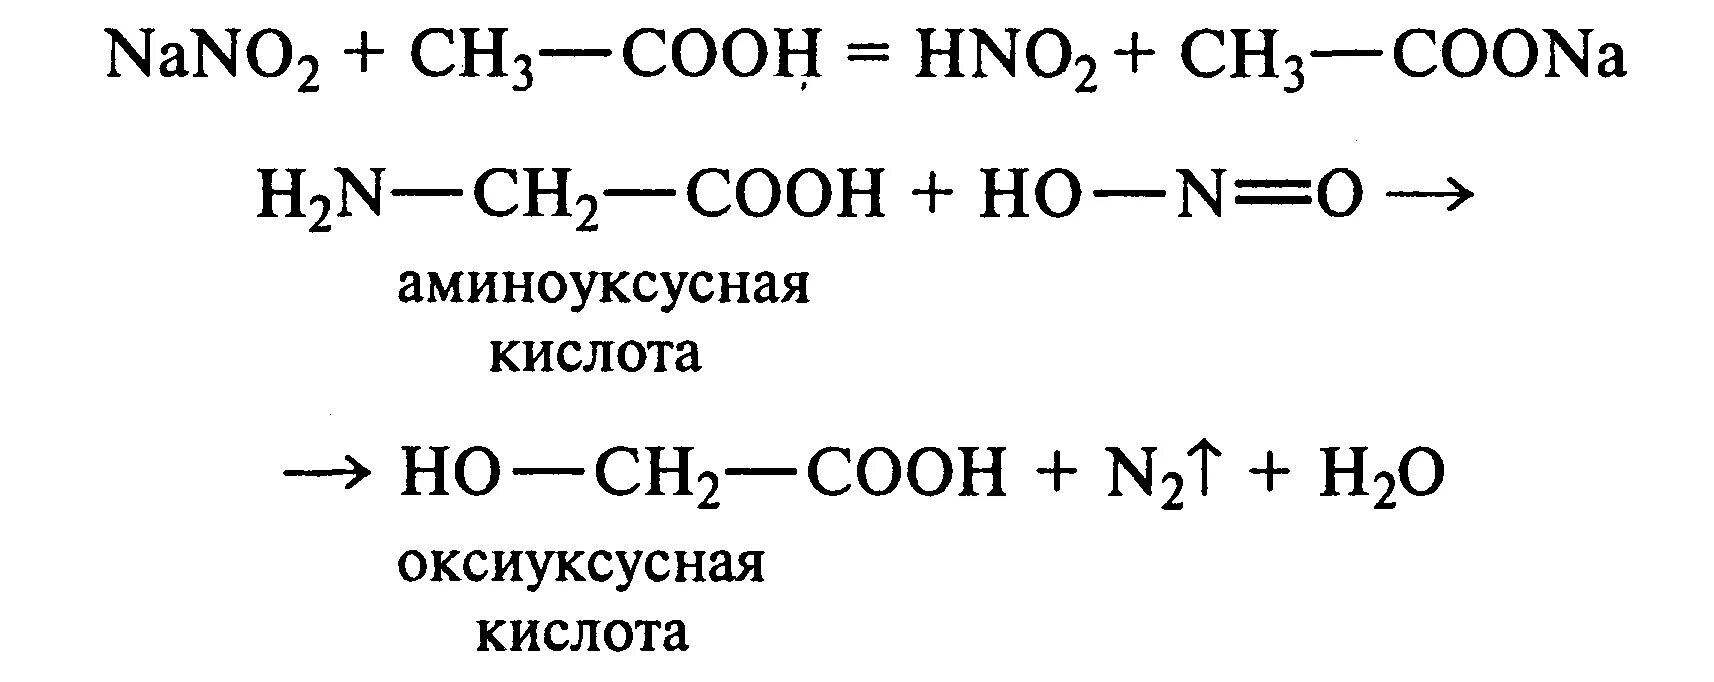 Аминоуксусная кислота hno3. Глицин нитрит натрия уксусная кислота. Глицин нитрит натрия уксусная кислота реакция. Глицин hno3. Продукт реакции уксусной кислоты и натрия